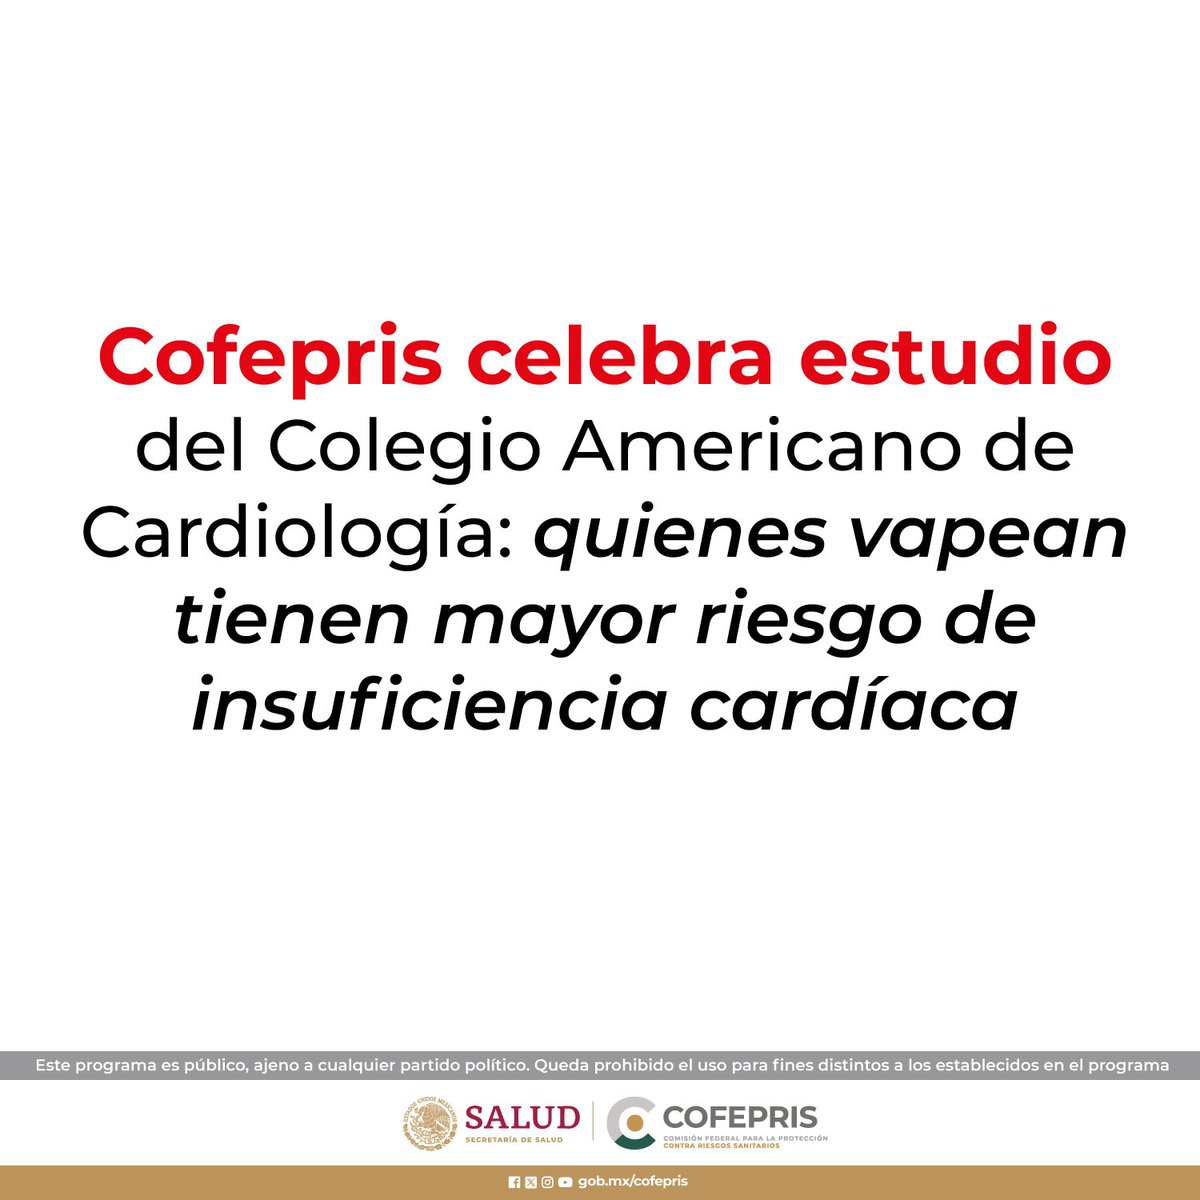 Cofepris celebra estudio del Colegio Americano de Cardiología: quienes vapean tienen mayor riesgo de insuficiencia cardíaca. 👉bit.ly/3Uc1Tw0